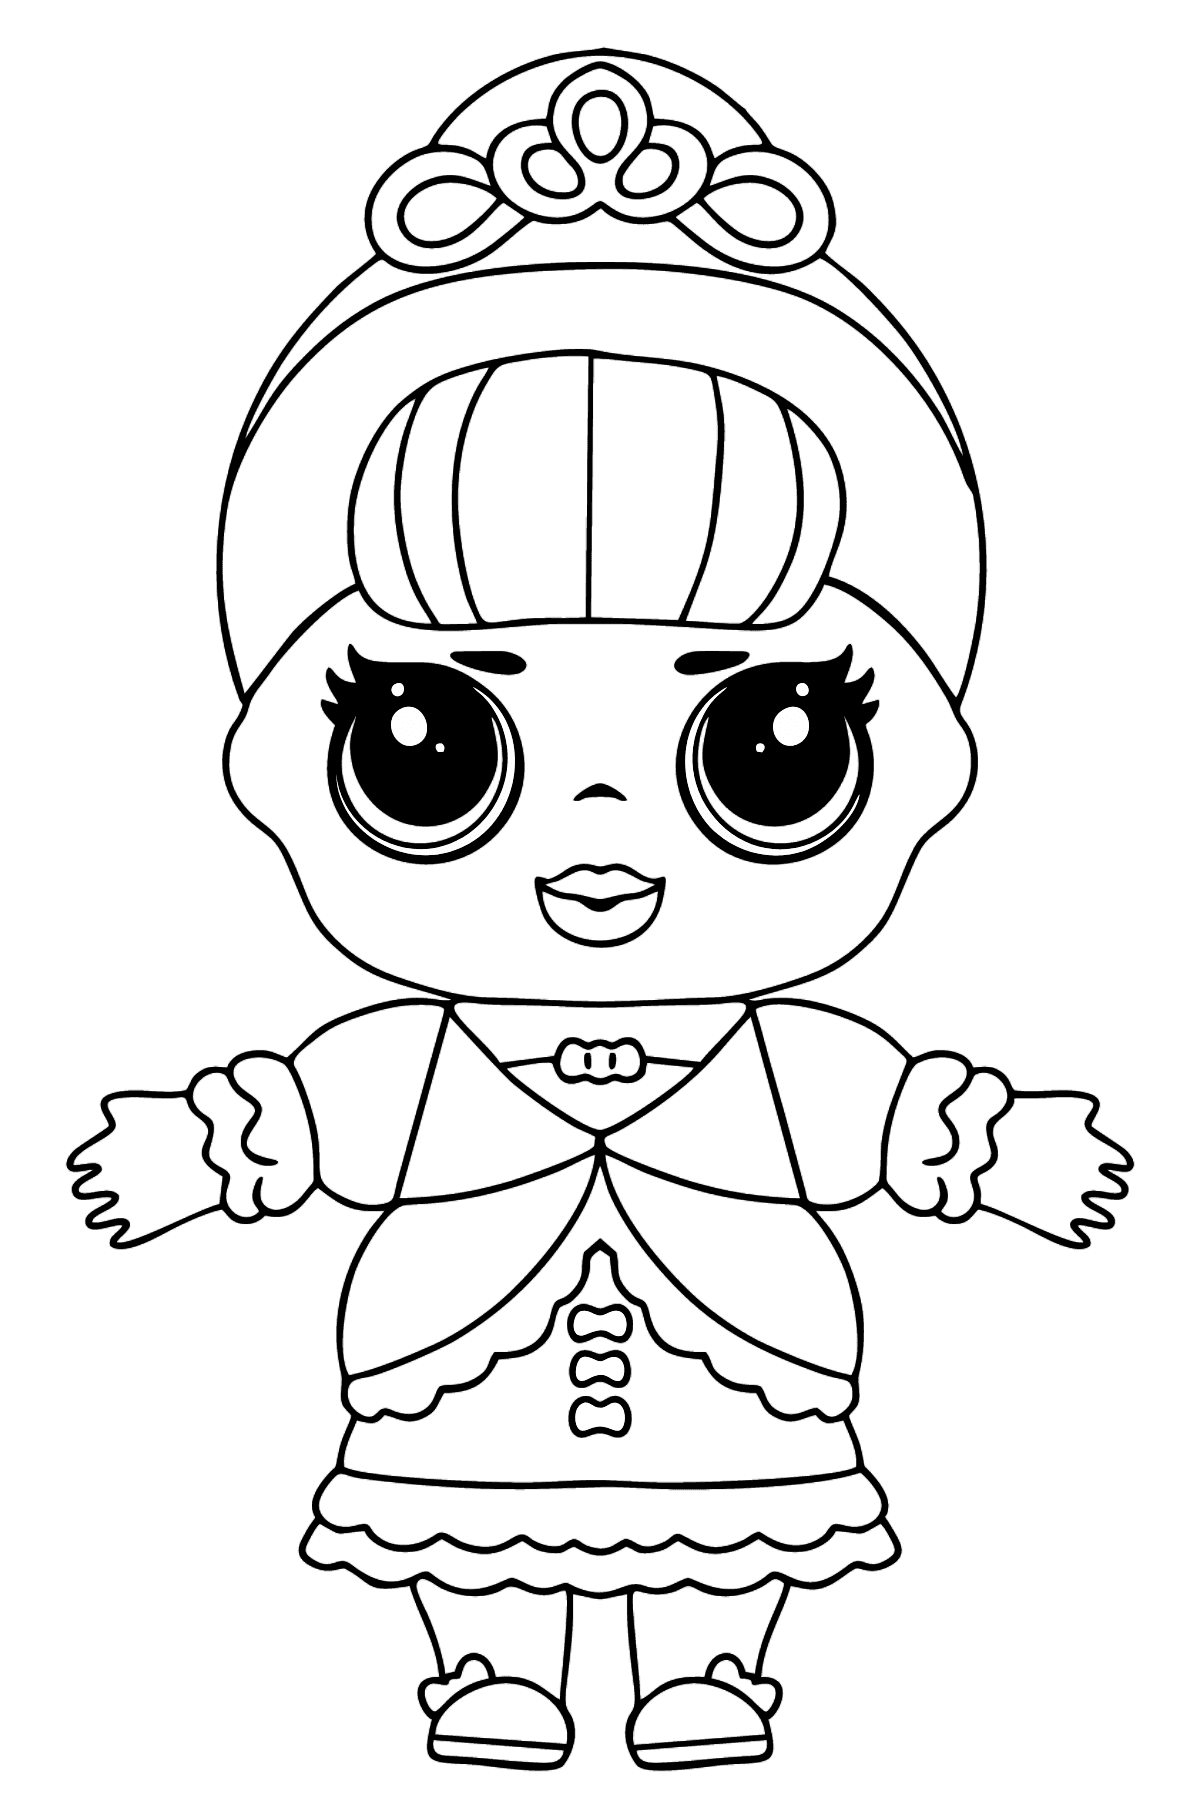 Раскраска кукла ЛОЛ Сюрприз Fancy - Картинки для Детей